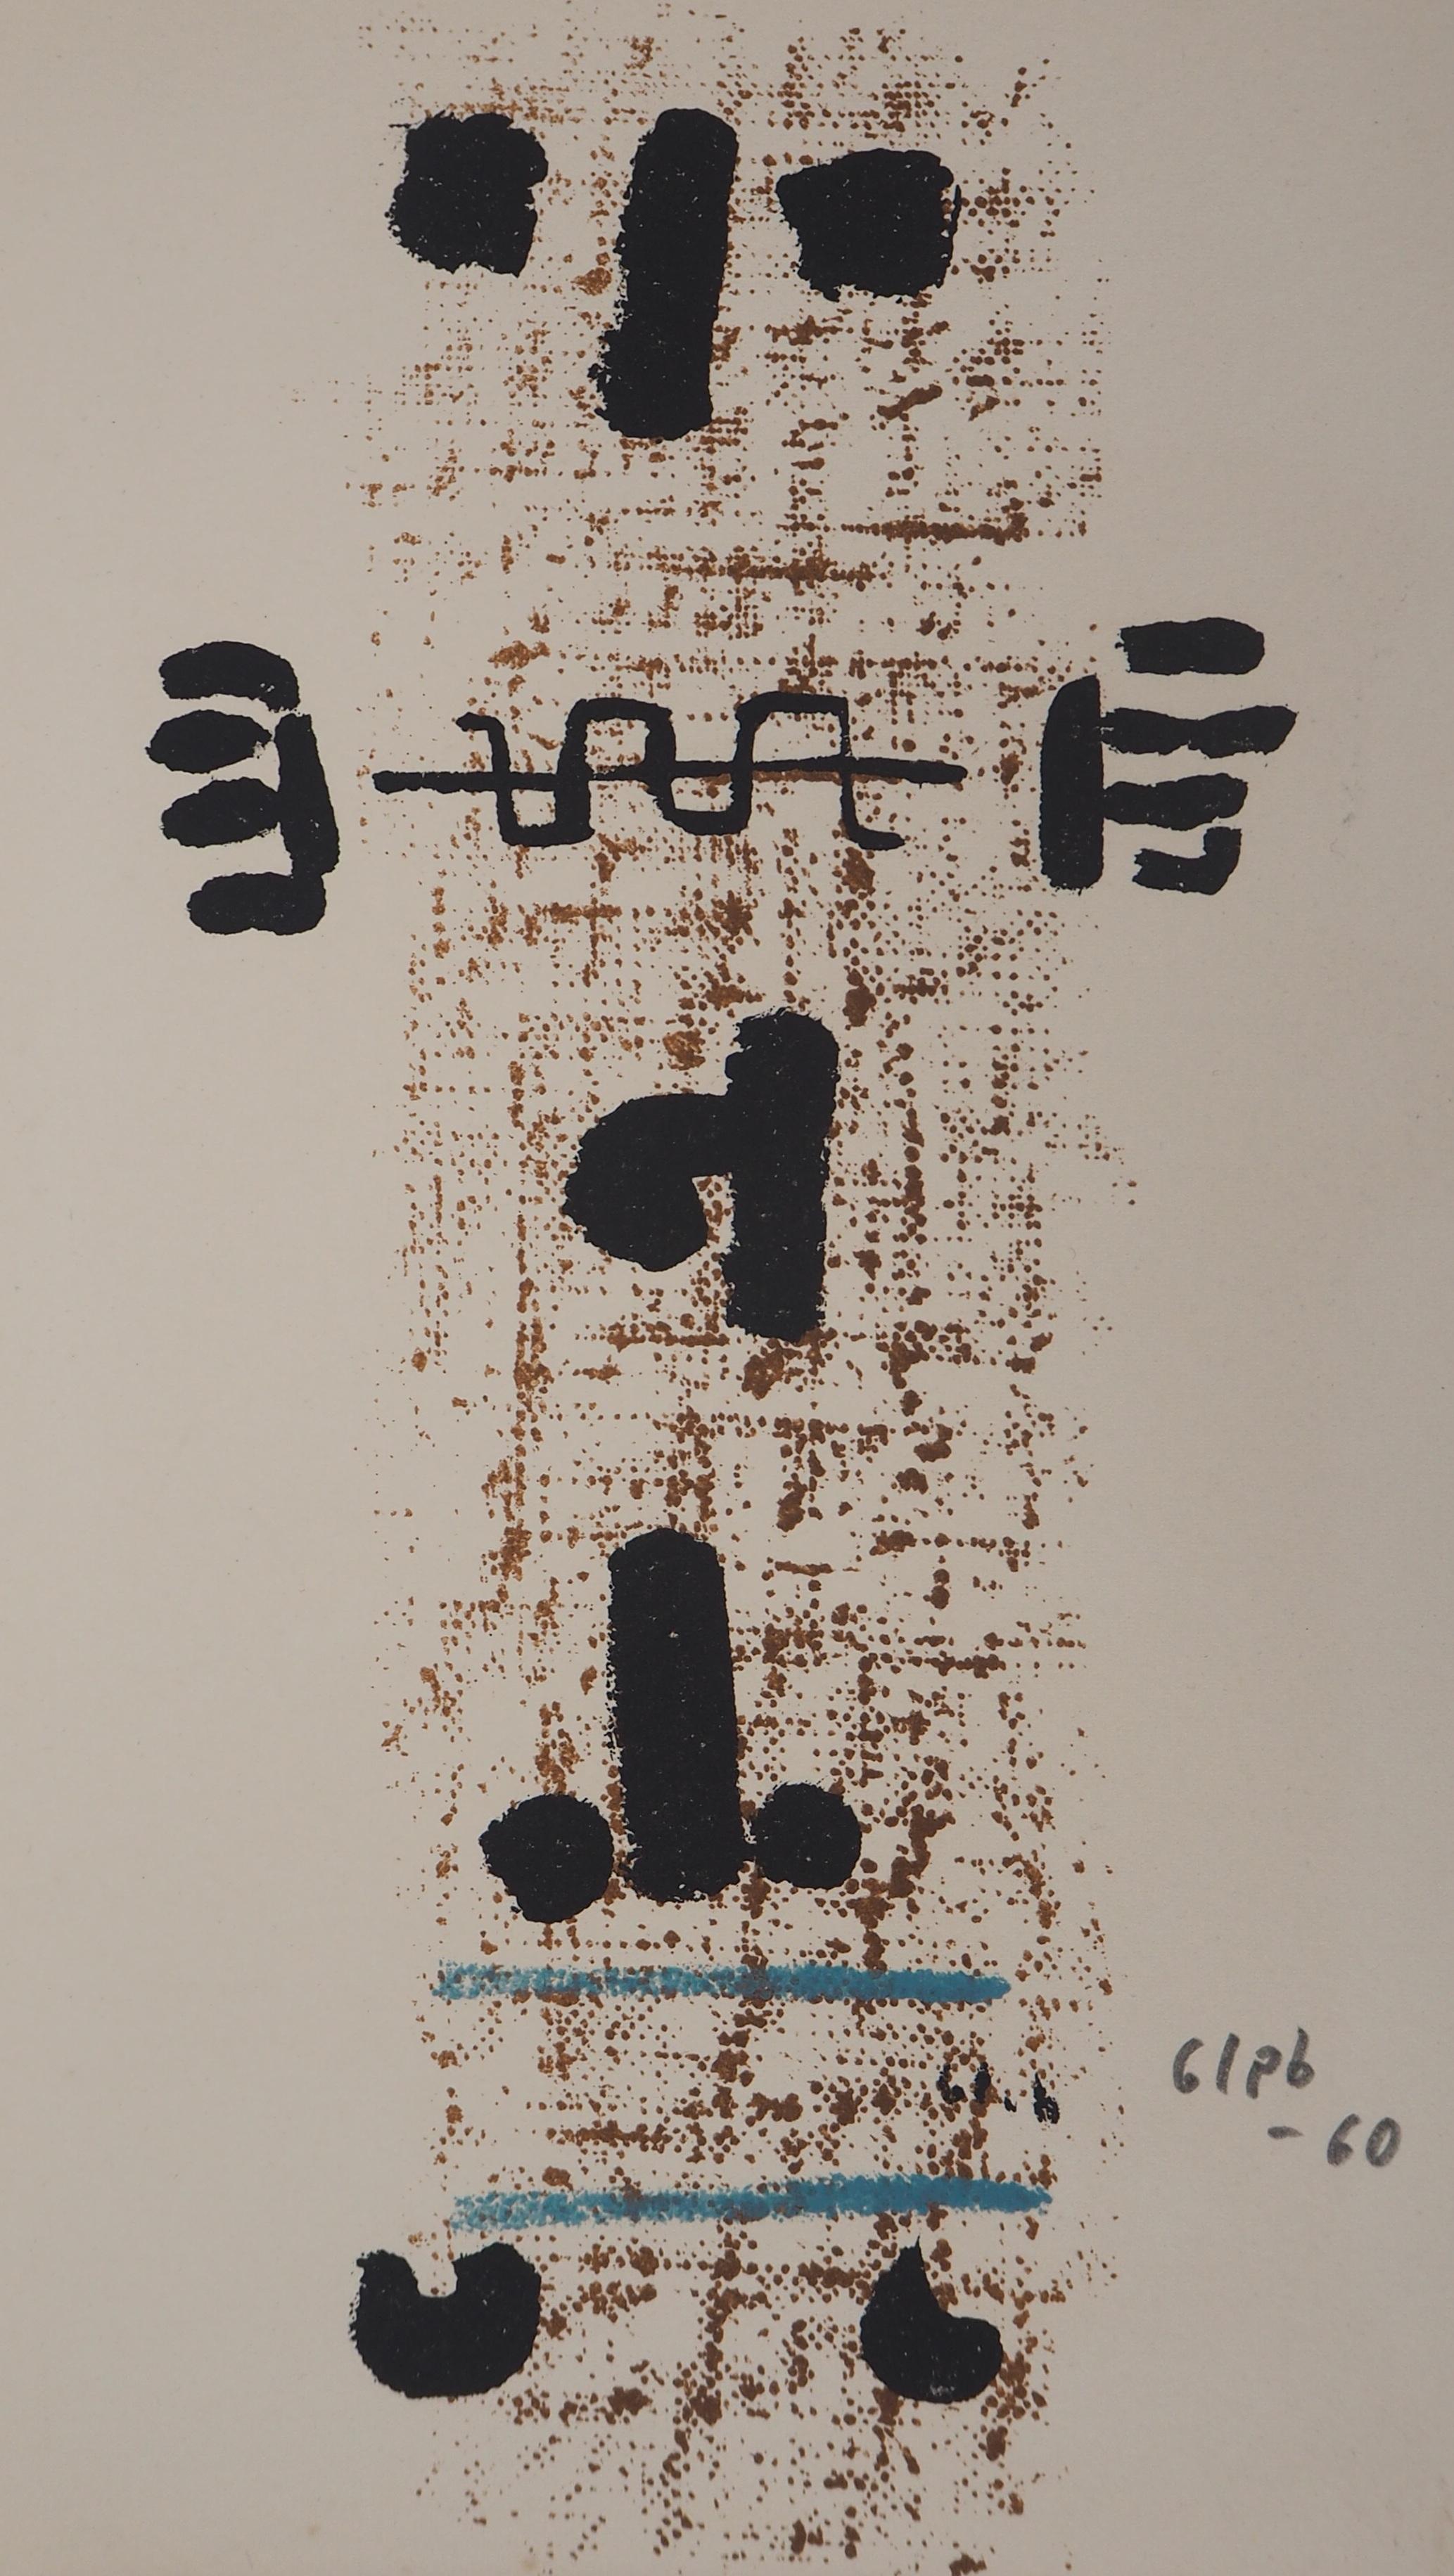 Thomas Gleb (Yehouda Chaim Kalman, genannt)
Art Brut, Totem, 1960

Original-Lithographie
Mit Bleistift signiert
Datiert (19)60
Auf Vellum 25 x 16,5 cm (ca. 10 x 6,5 in)

Ausgezeichneter Zustand